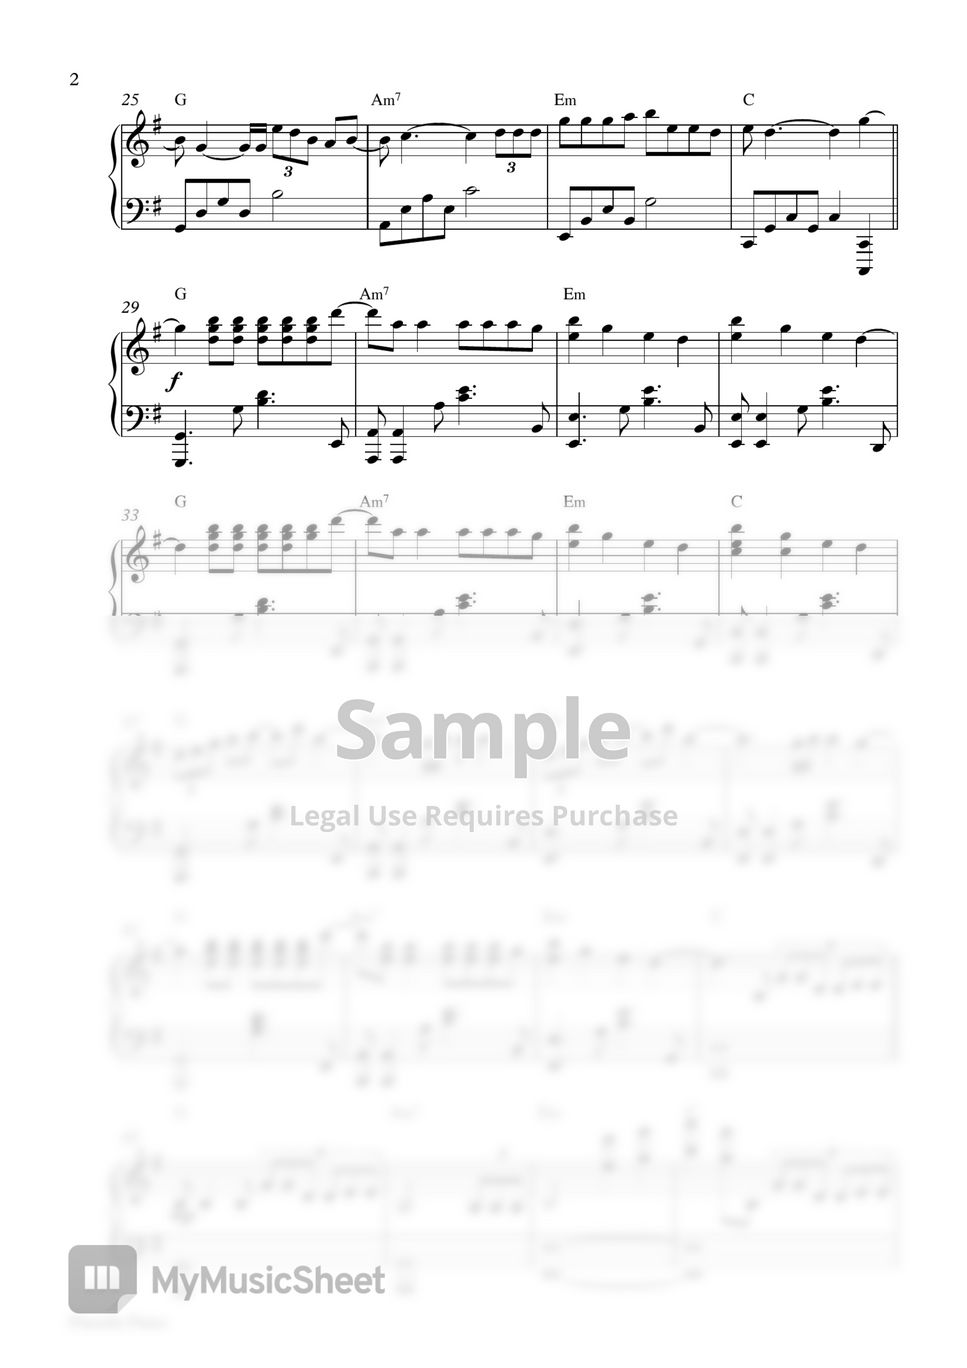 Camila Cabello - Easy (Piano Sheet) by Pianella Piano